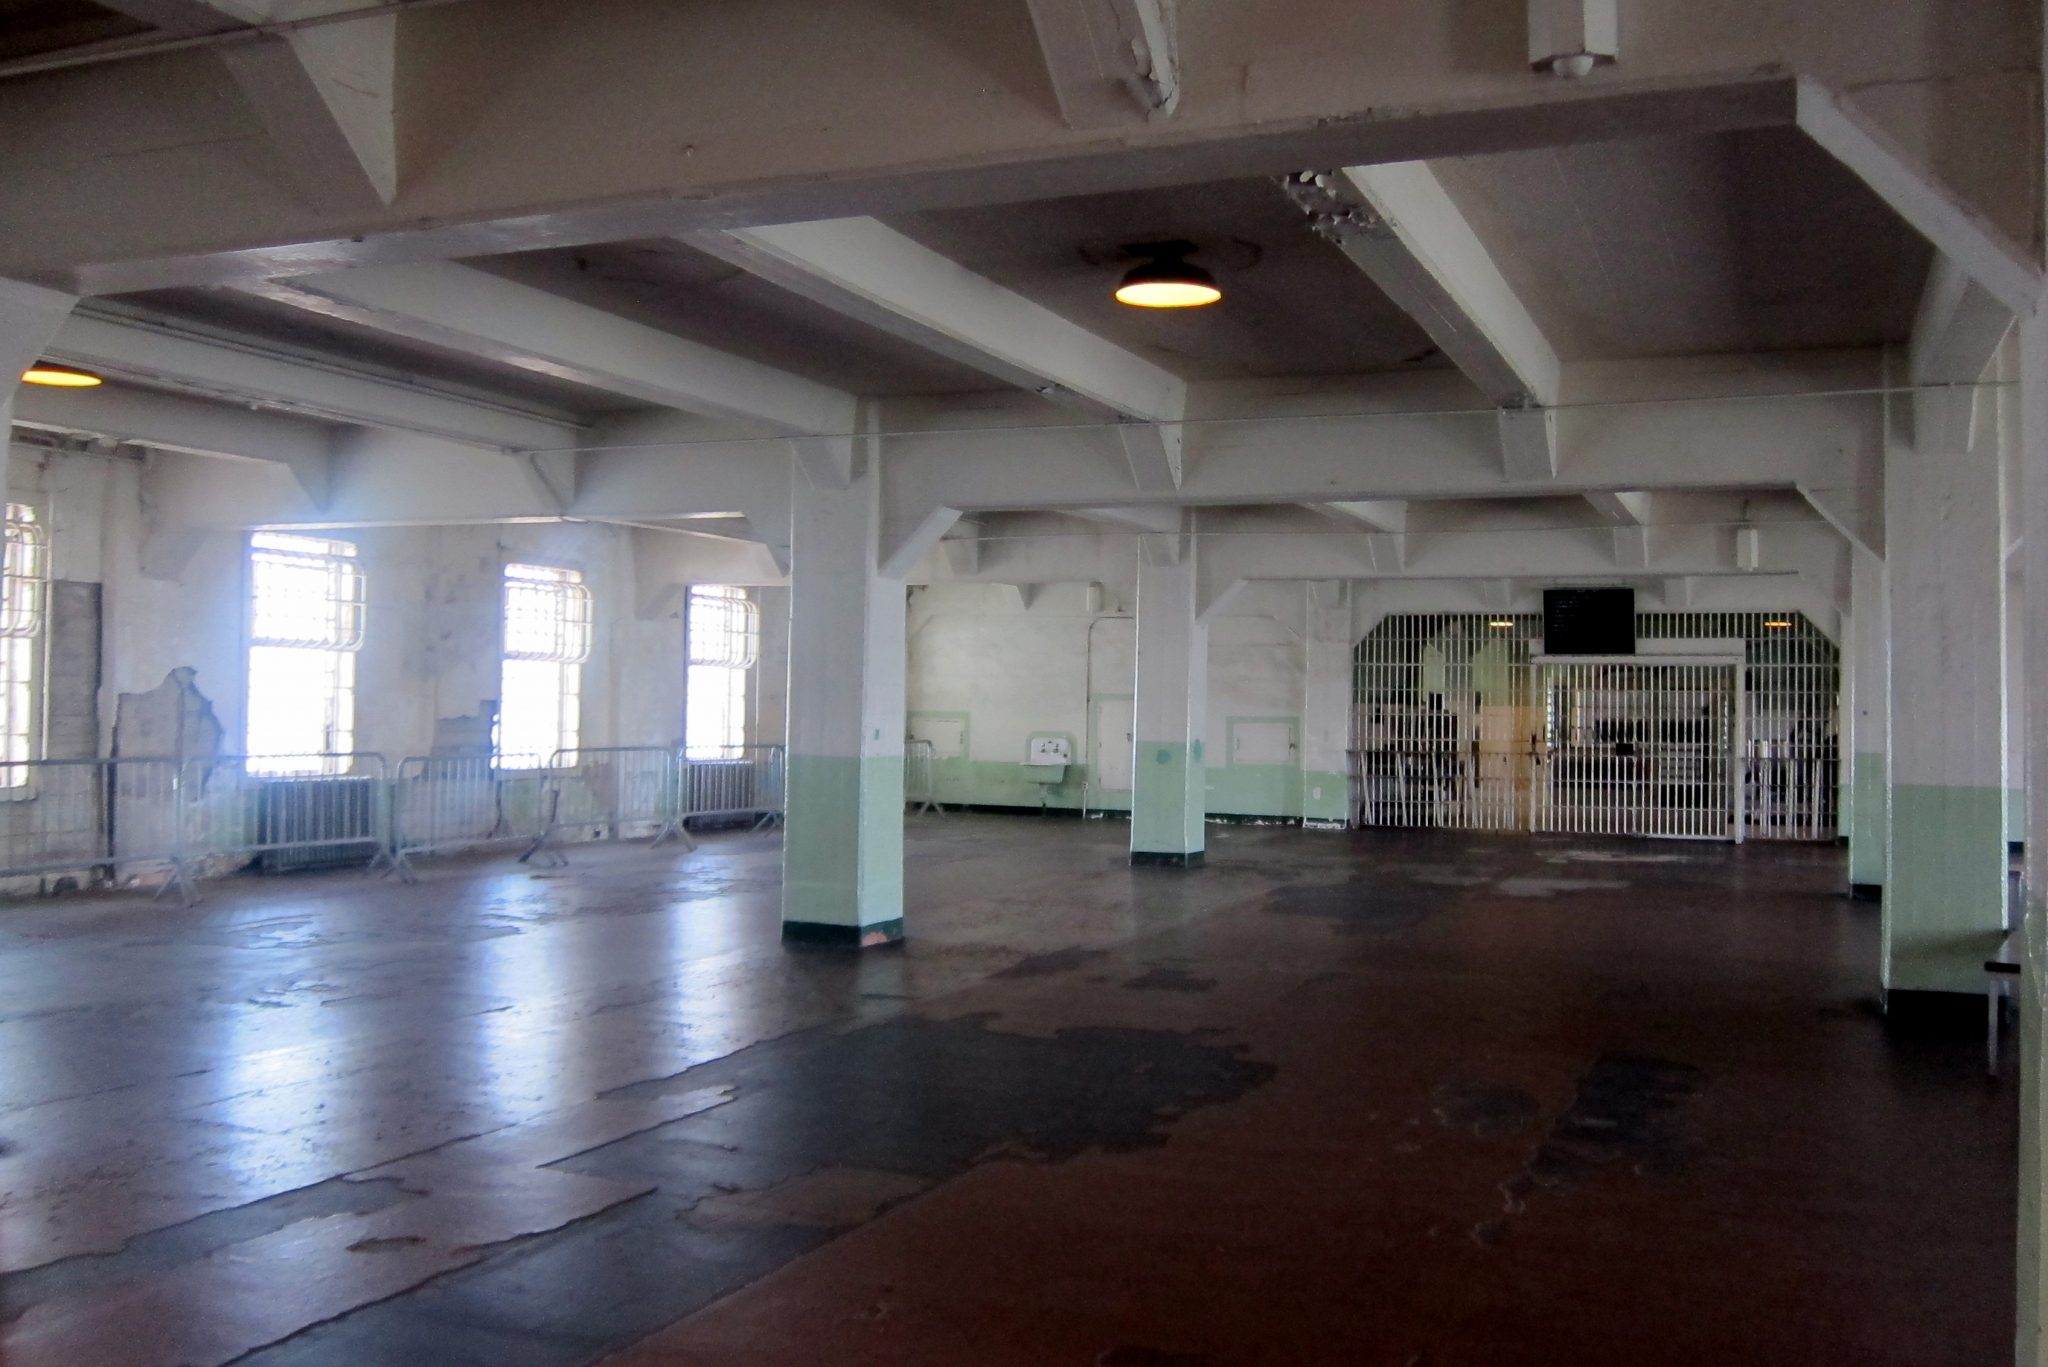 San Francisco - Alcatraz: Cellhouse - Dining Hall